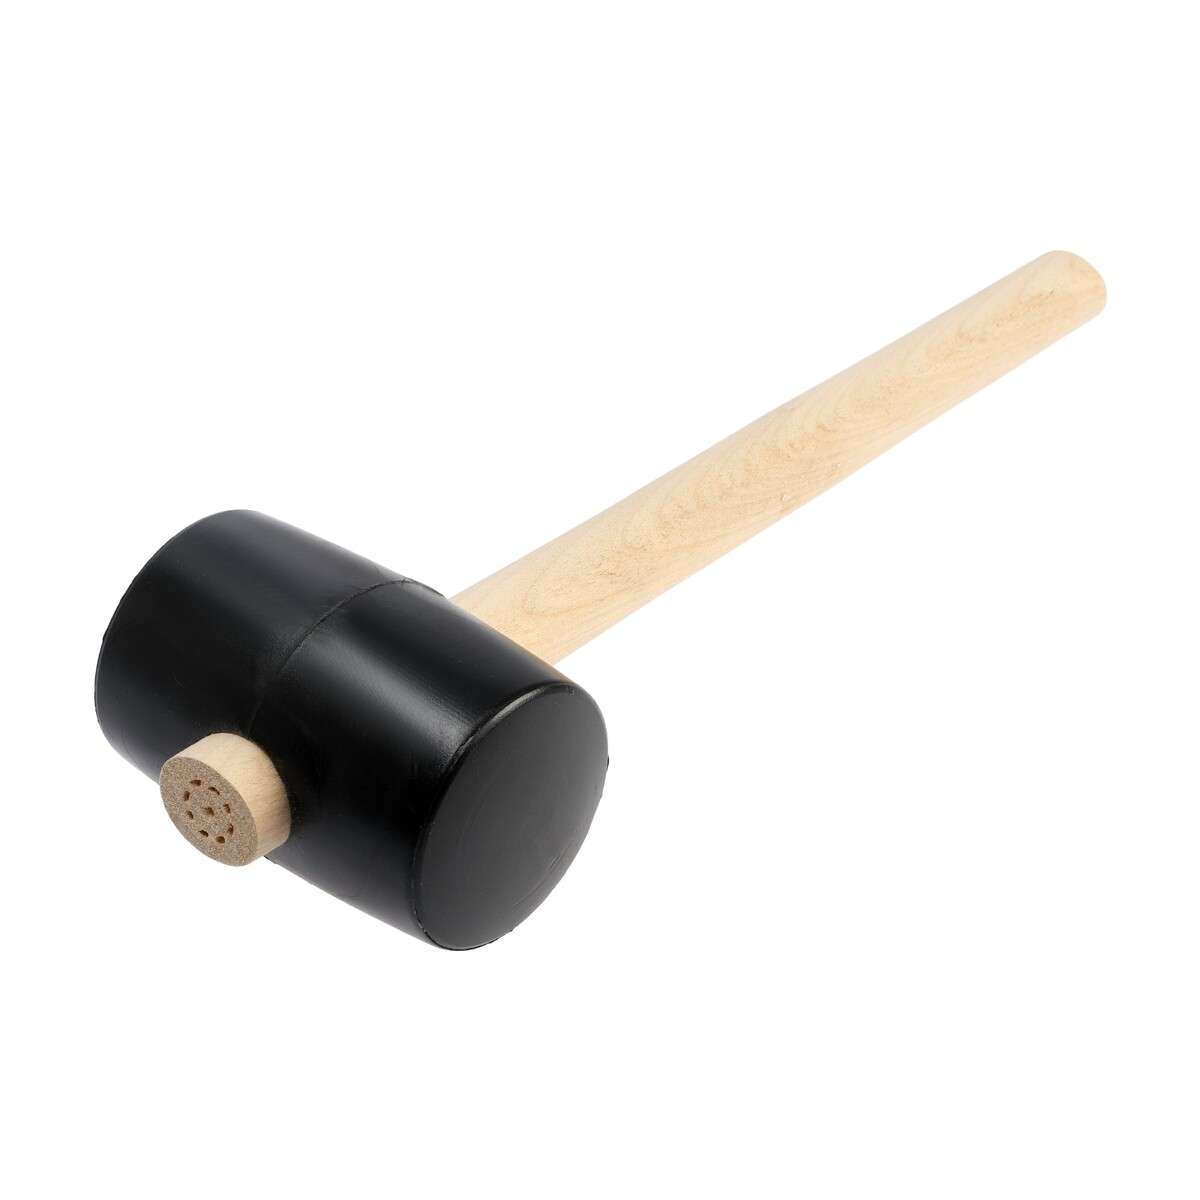 Киянка лом, деревянная рукоятка, черная резина, 65 мм, 500 г киянка тундра фиберглассовая рукоятка белая резина 750 г